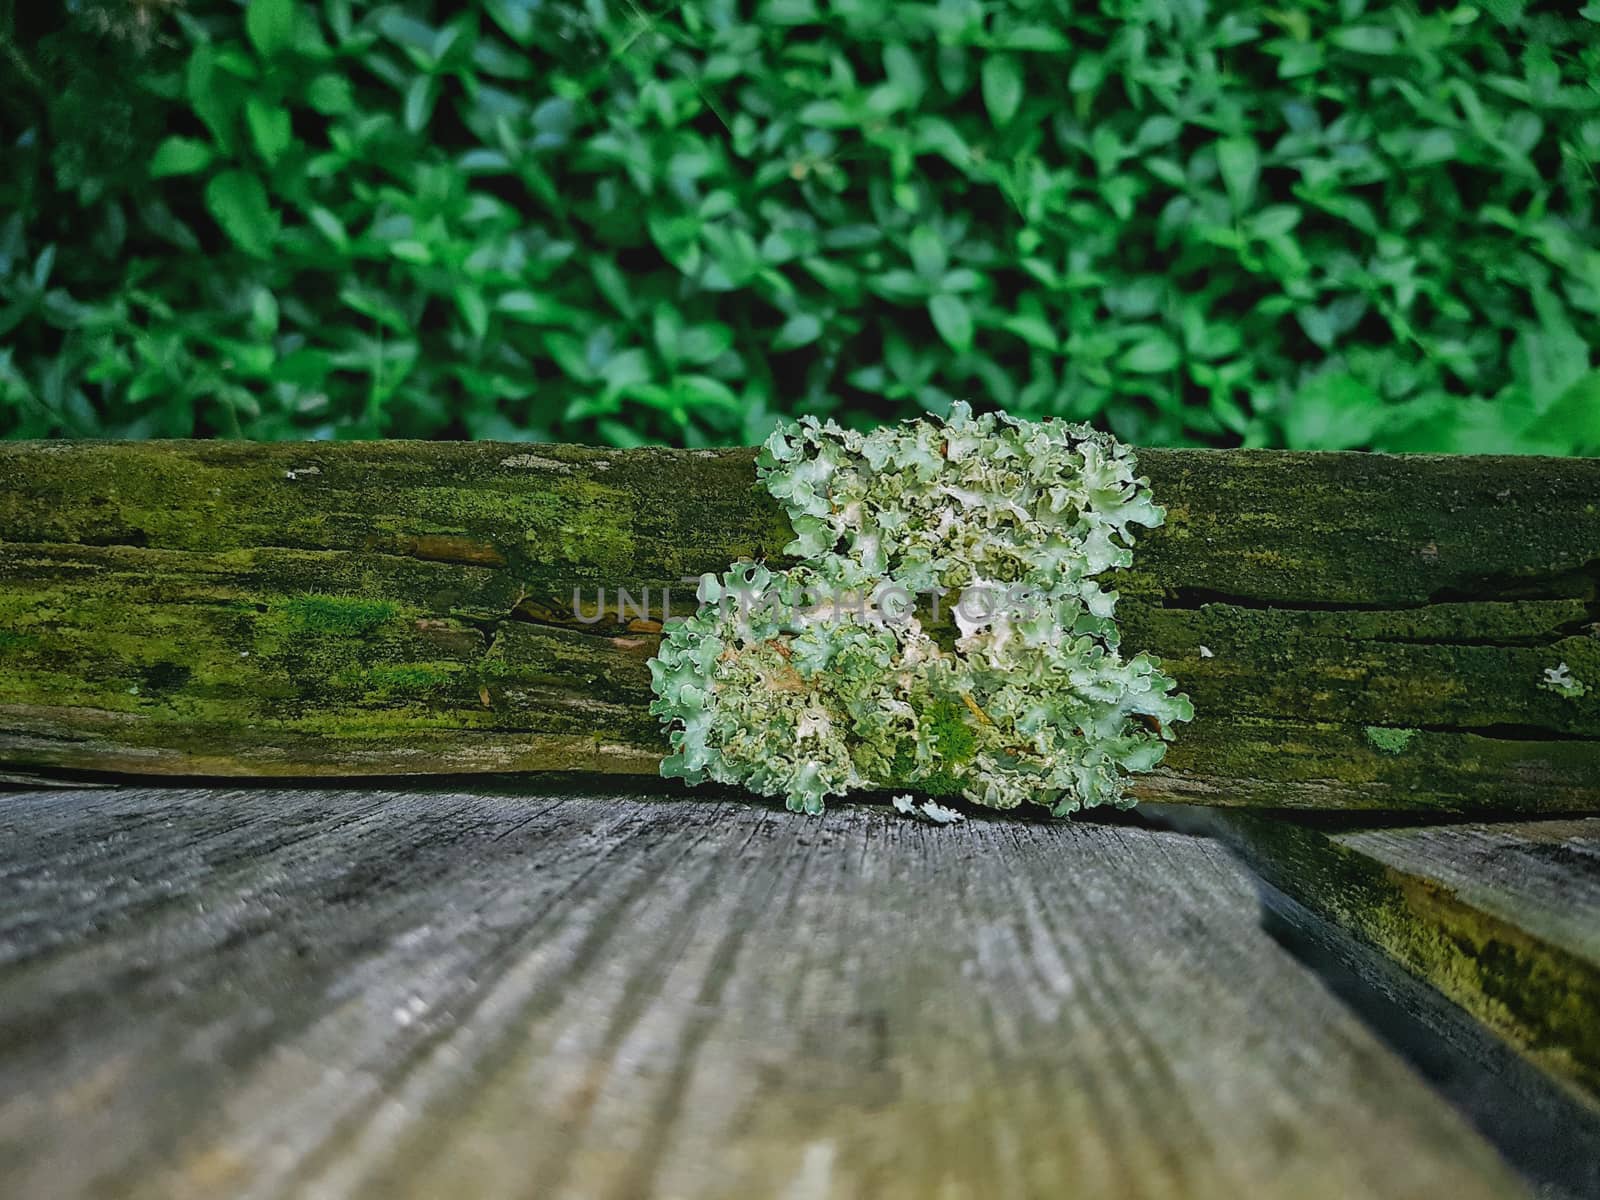 Lichen On Wood Fence by gstalker